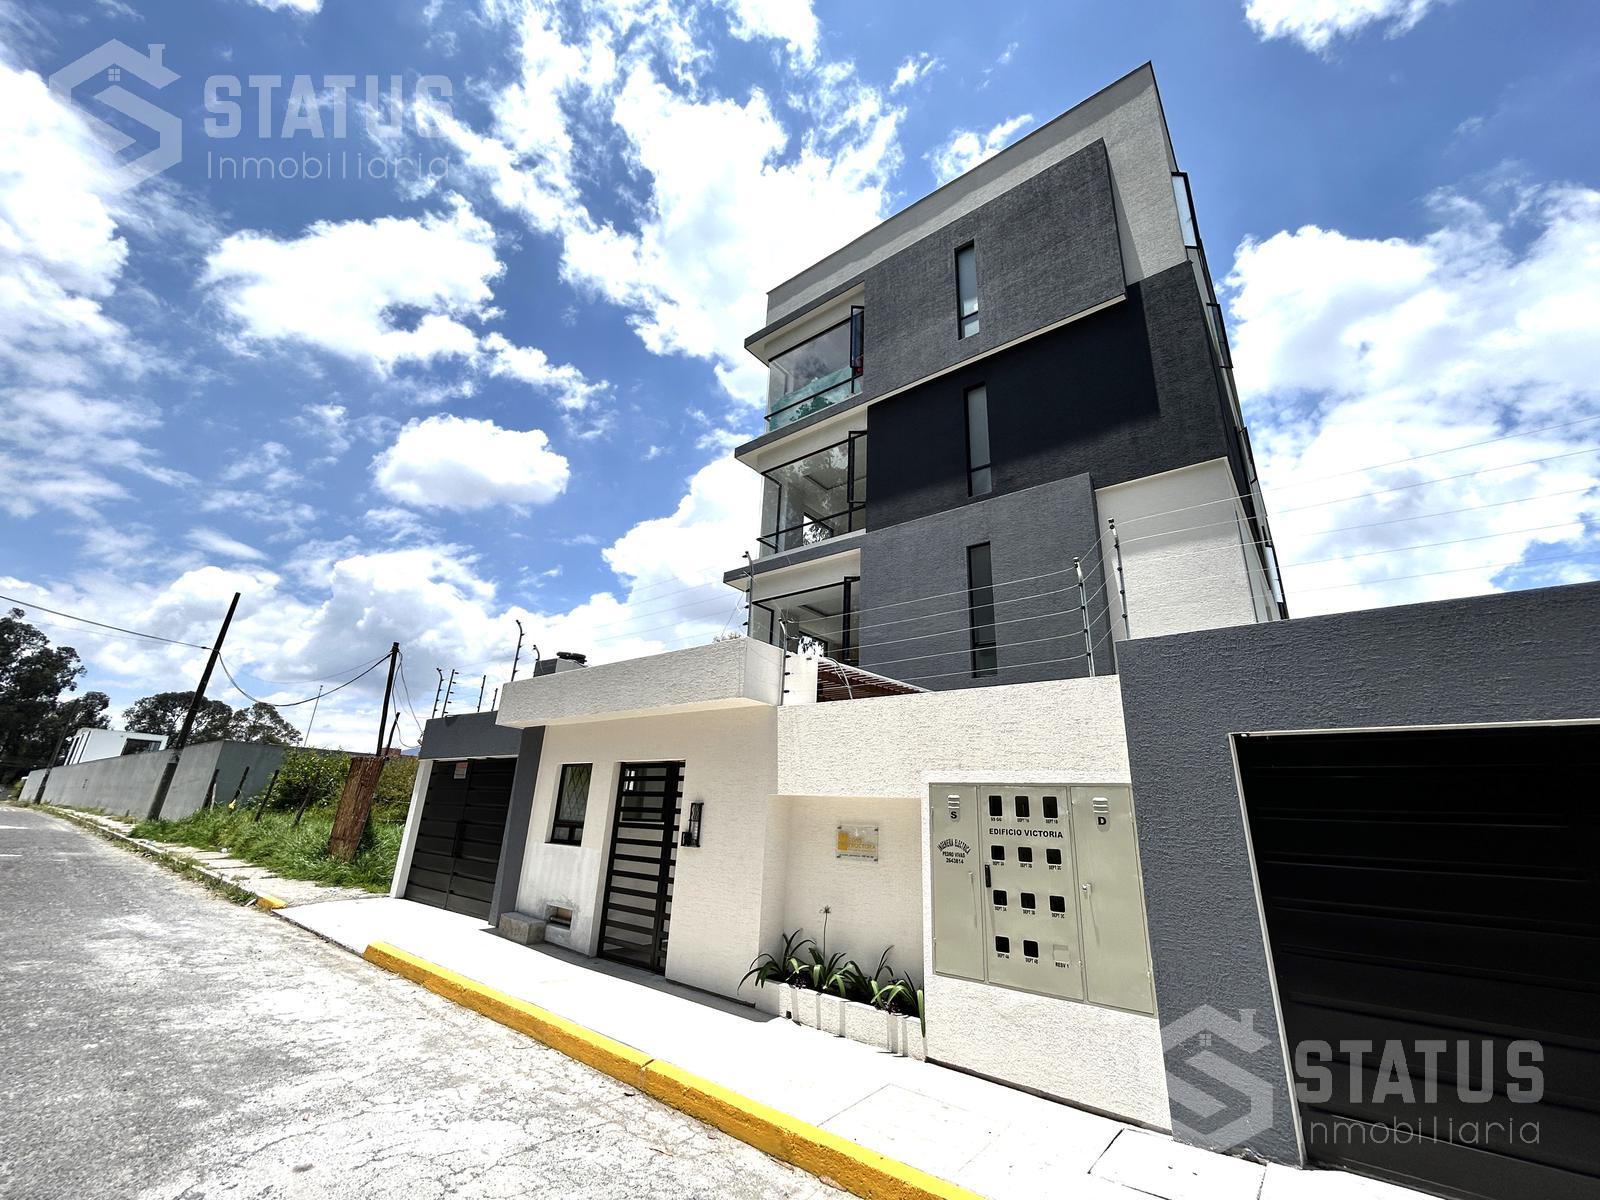 Se vende departamento 67m, 2 Dorm., 1 Garaje, Edif. con ascensor, sector Ponceano, $98.990